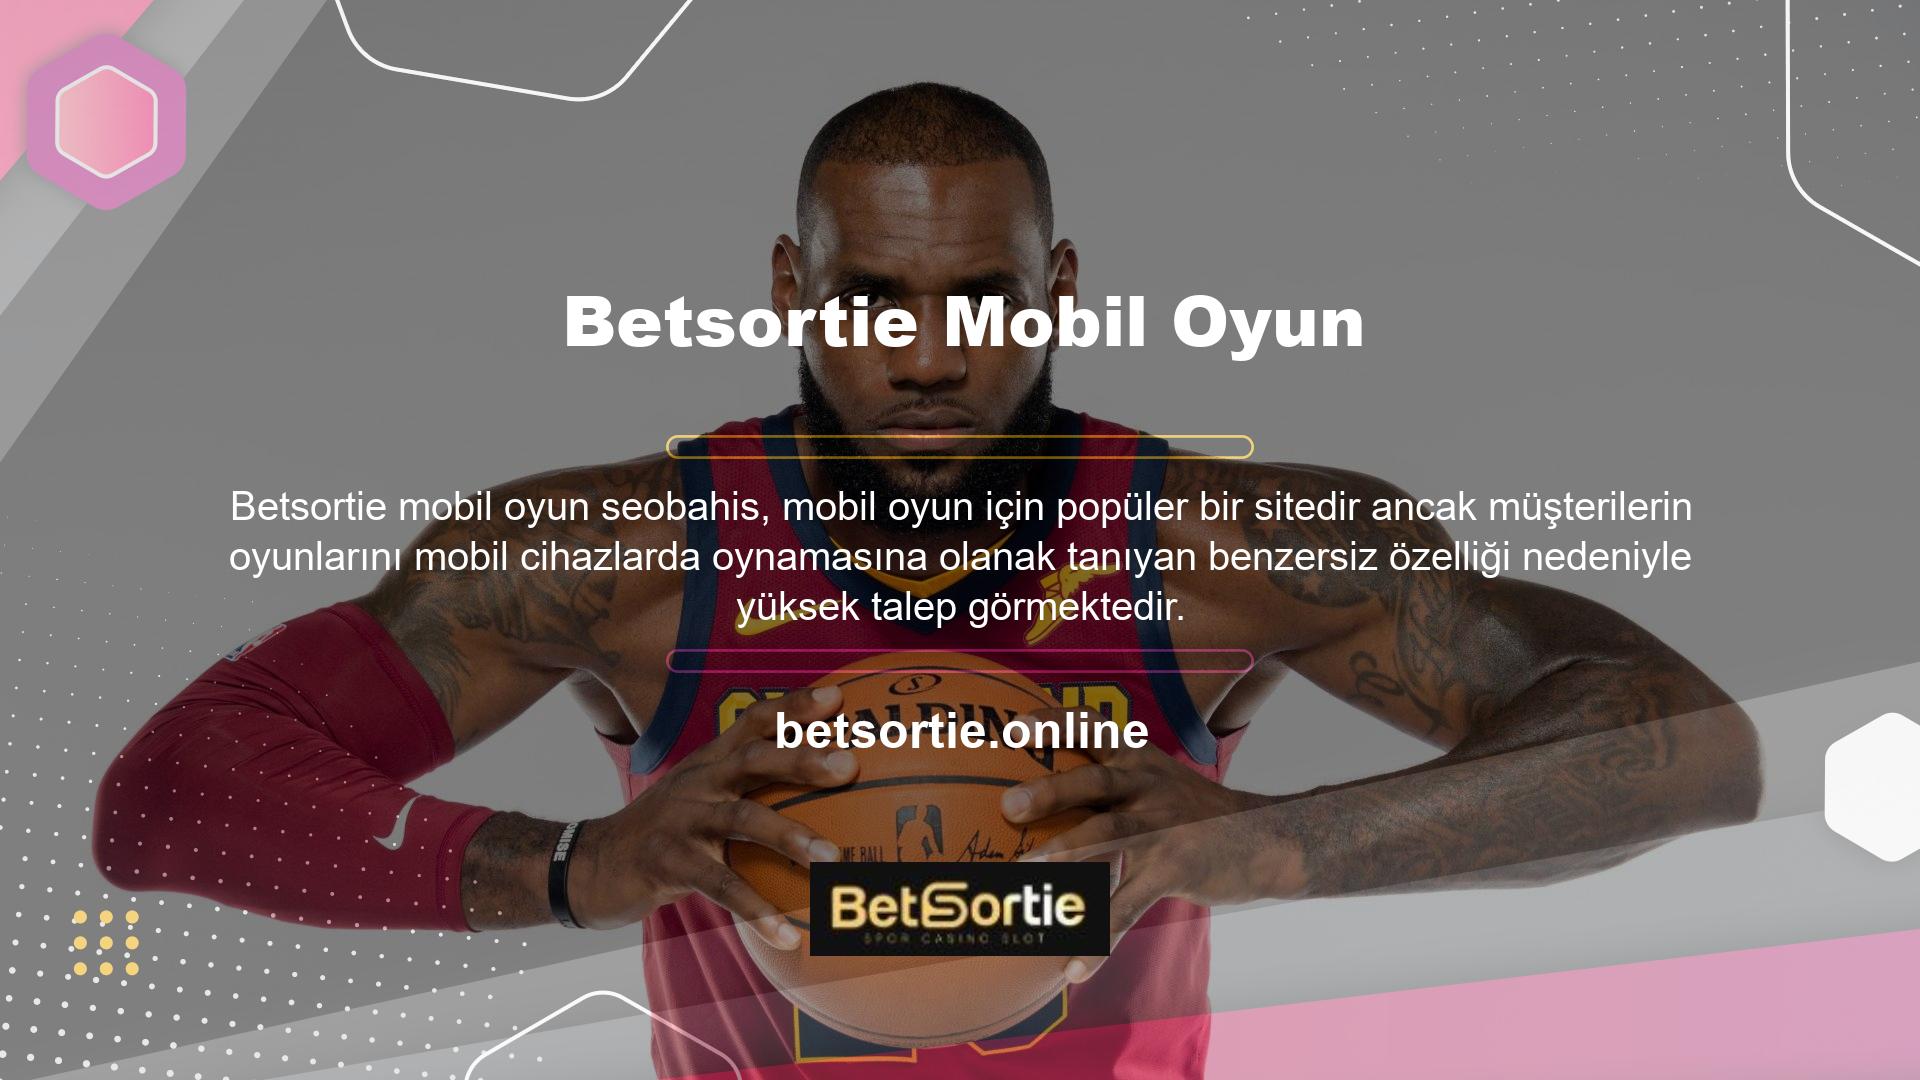 Betsortie son derece kazançlı bir web sitesidir, ancak bunu finansal kazanç için istismar etmek isteyen birkaç kişi vardır